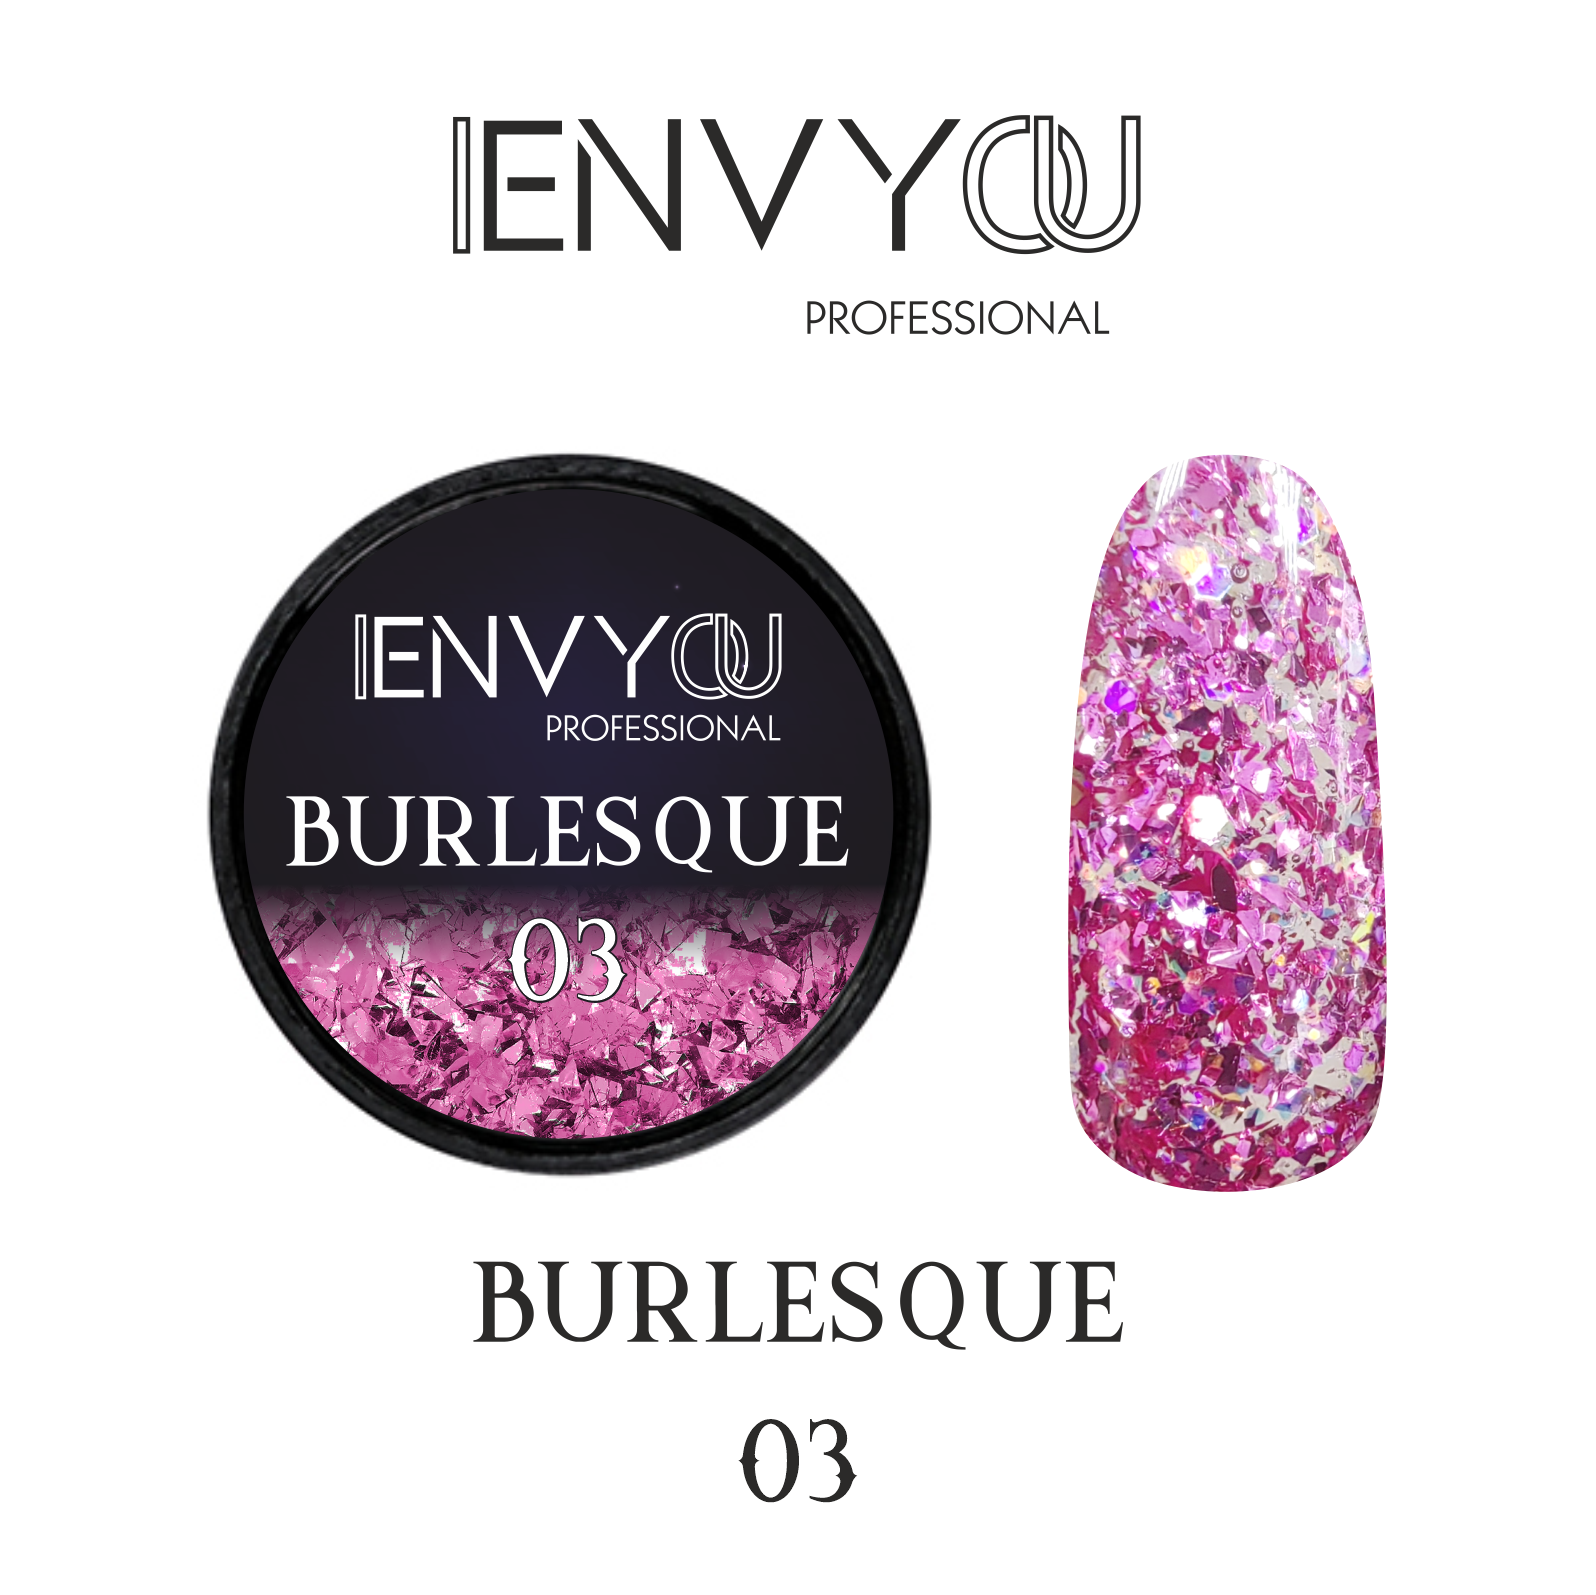 ENVY Burlesque 03 6g